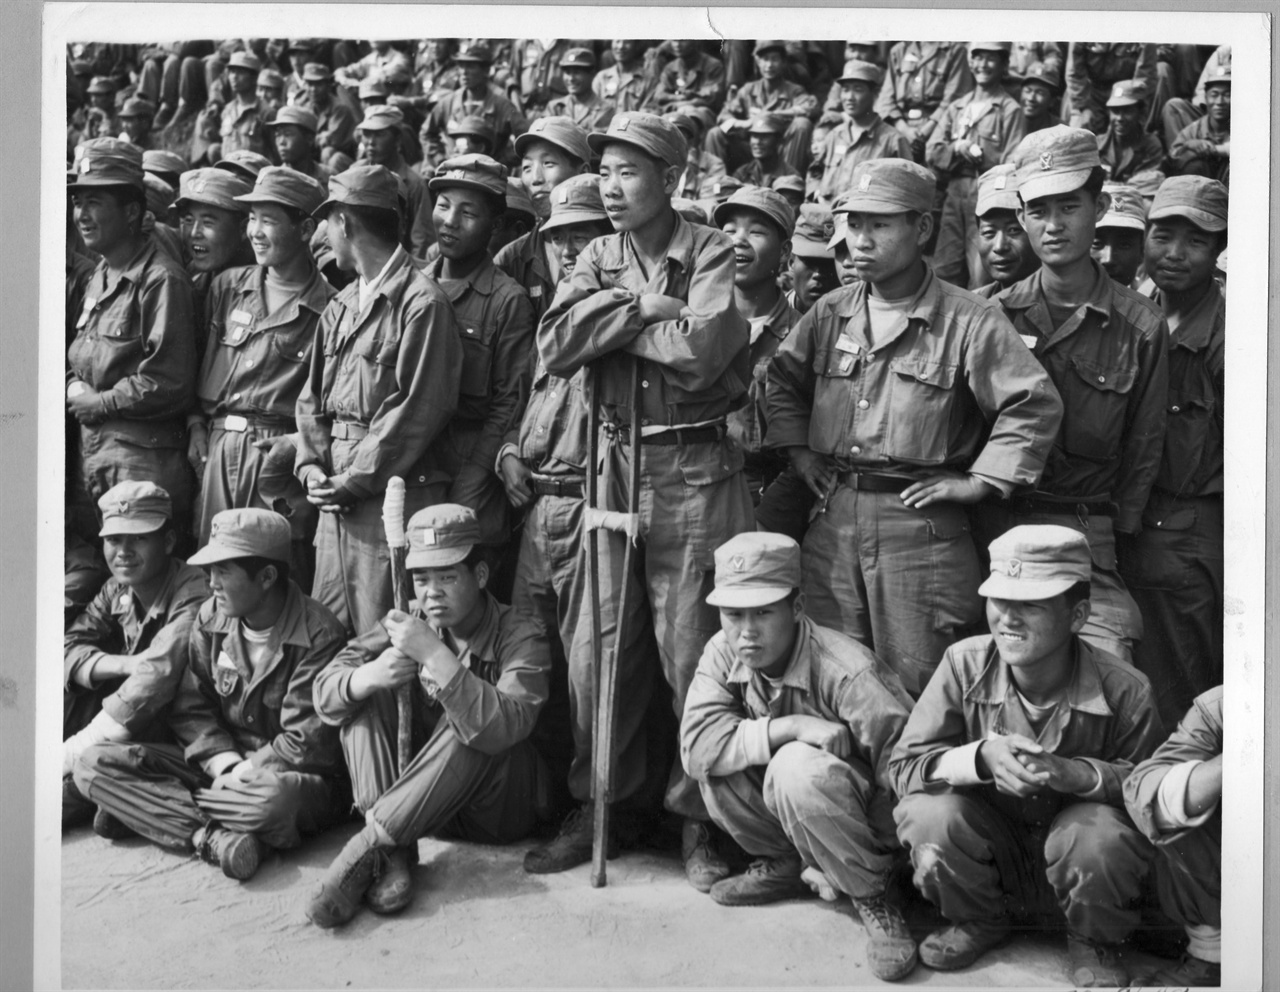 1952. 부산, 국군병원에 입원 중인 병사들이 경남여중고생들의 위문공연을 관람하고 있다.